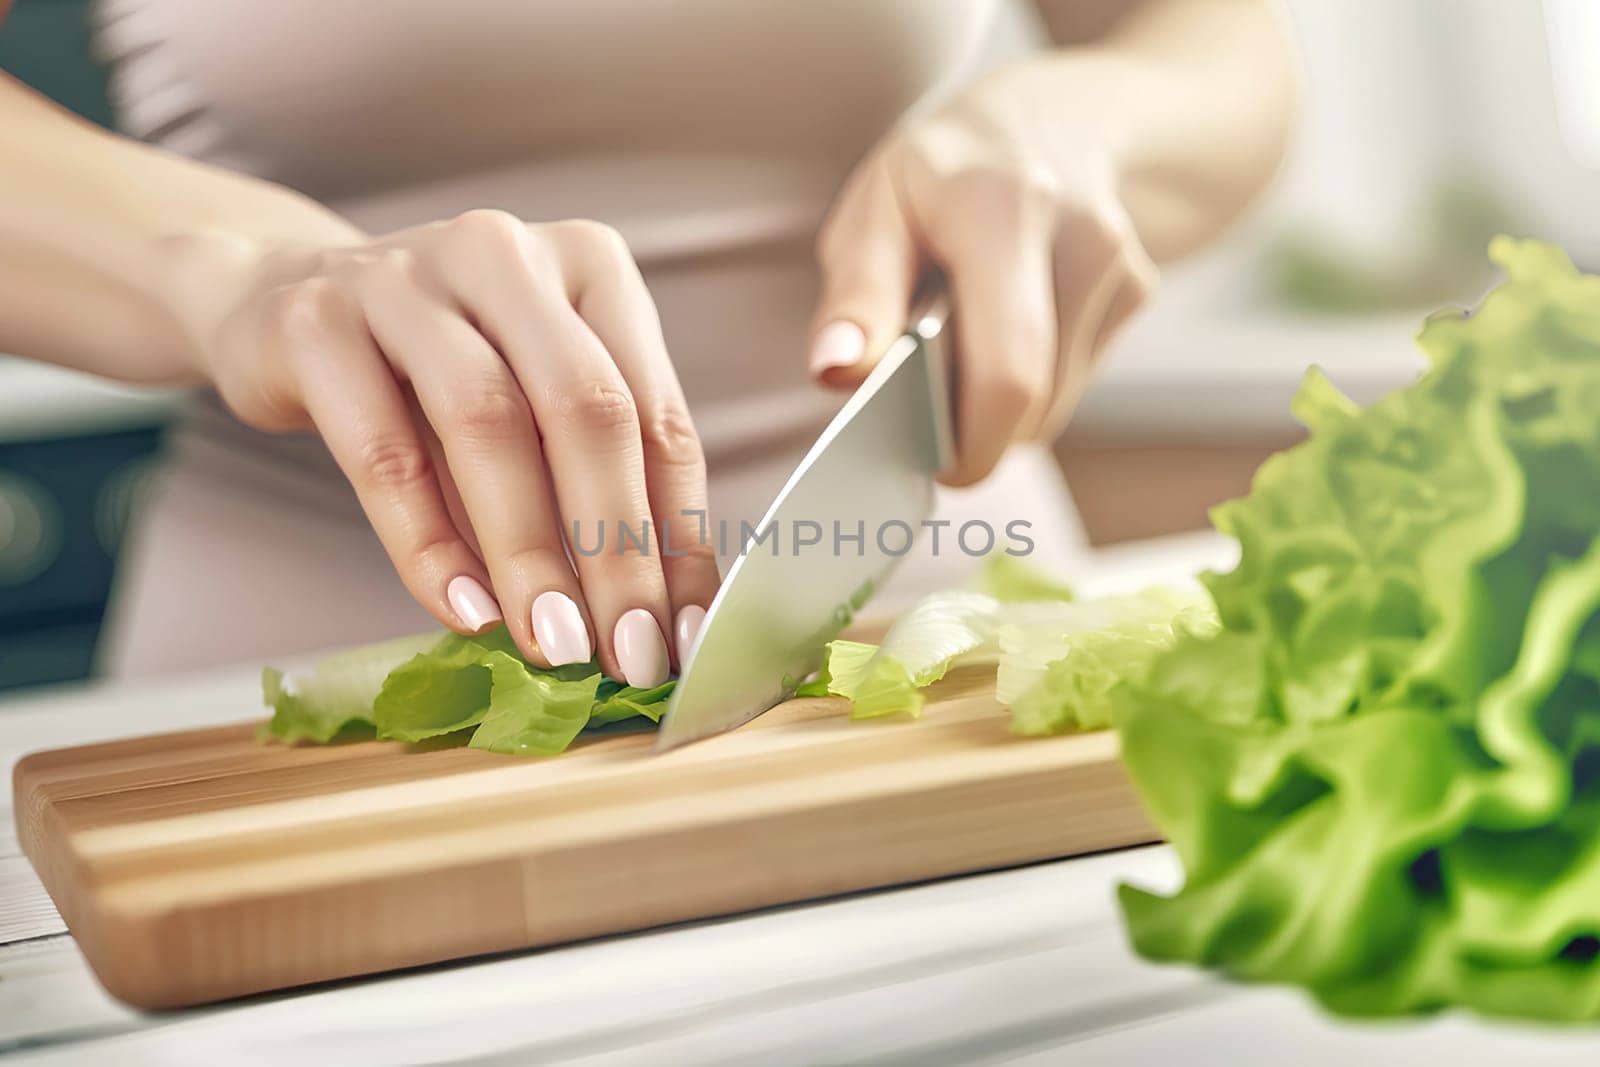 woman cutting green salad leaves on cutting board by Annado